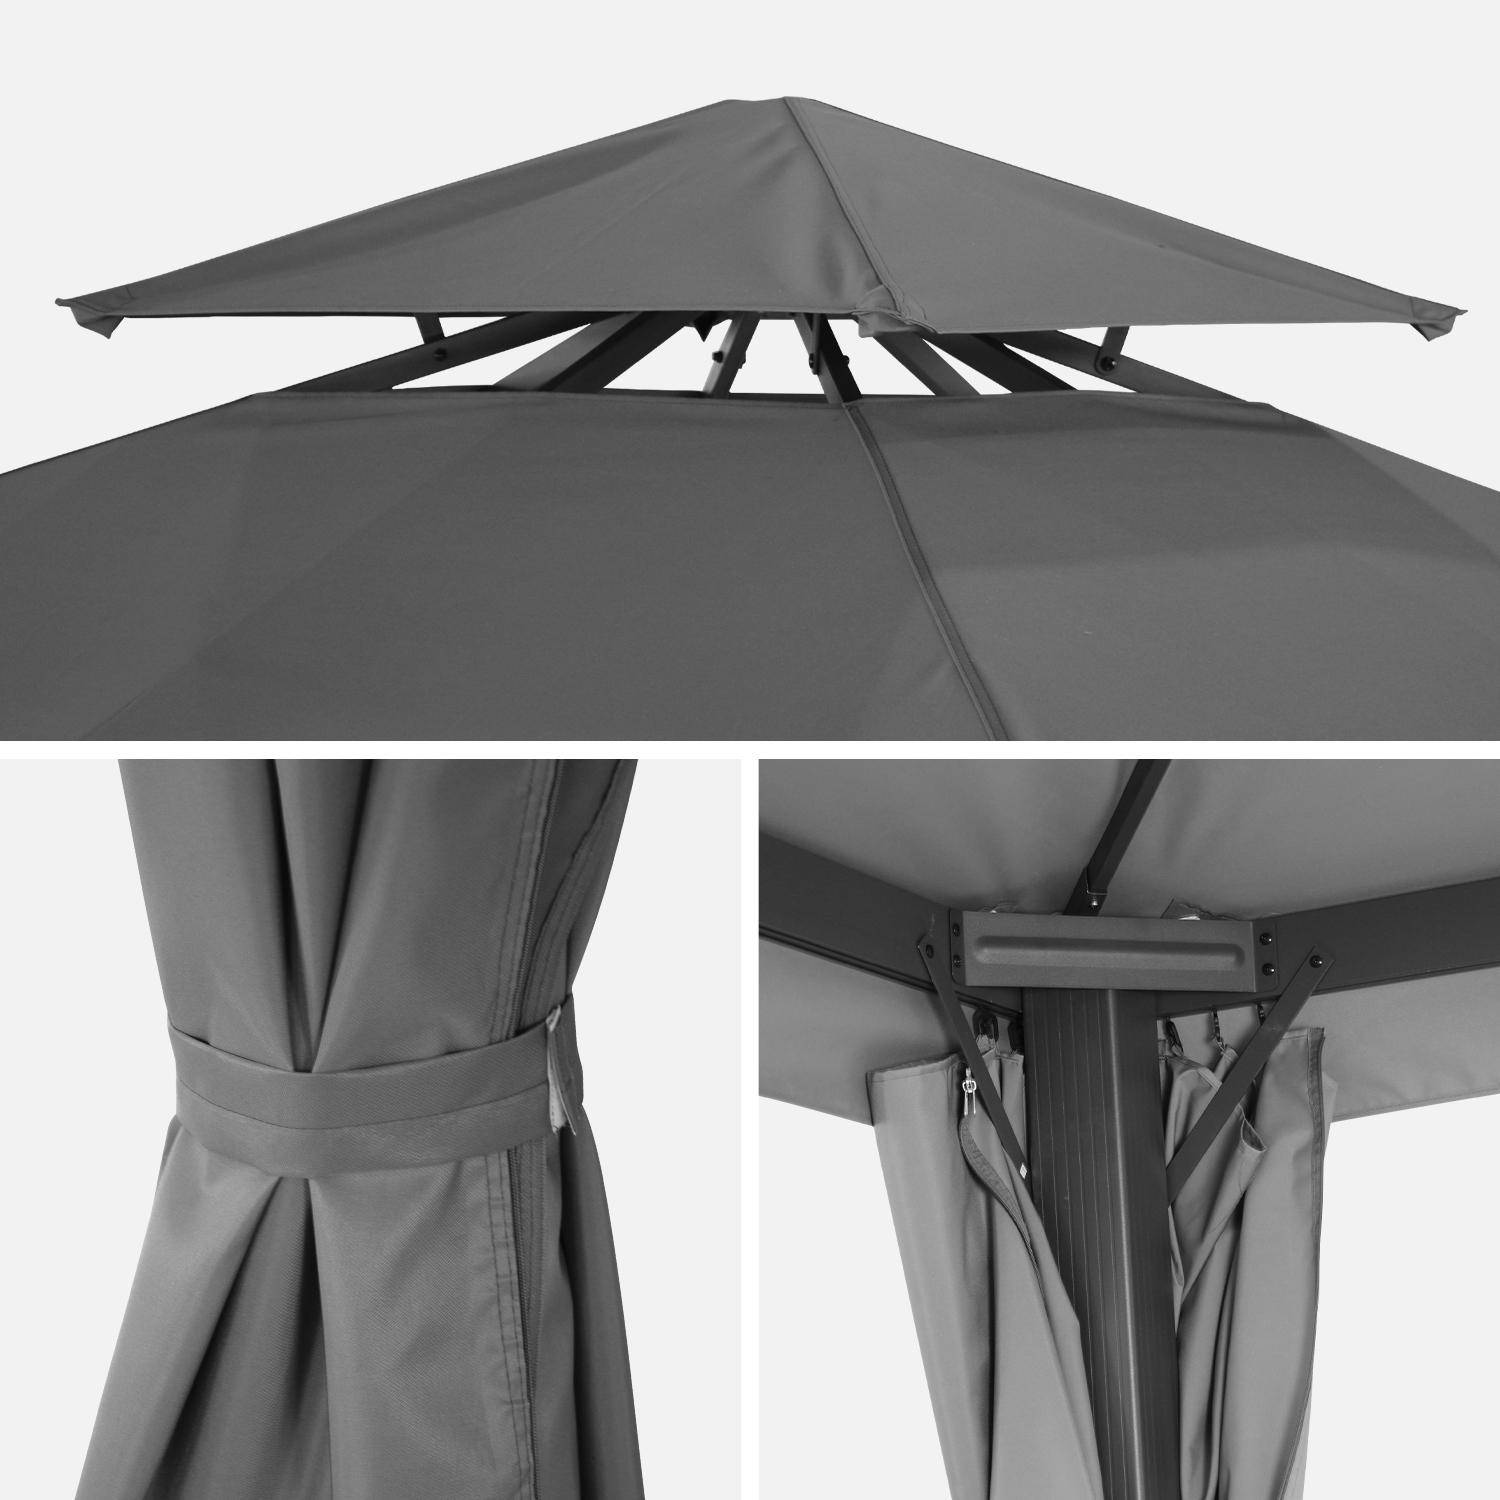 Pergola aluminium - Divodorum 3x3m -  Toile grise - Tonnelle avec rideaux, structure aluminium Photo4